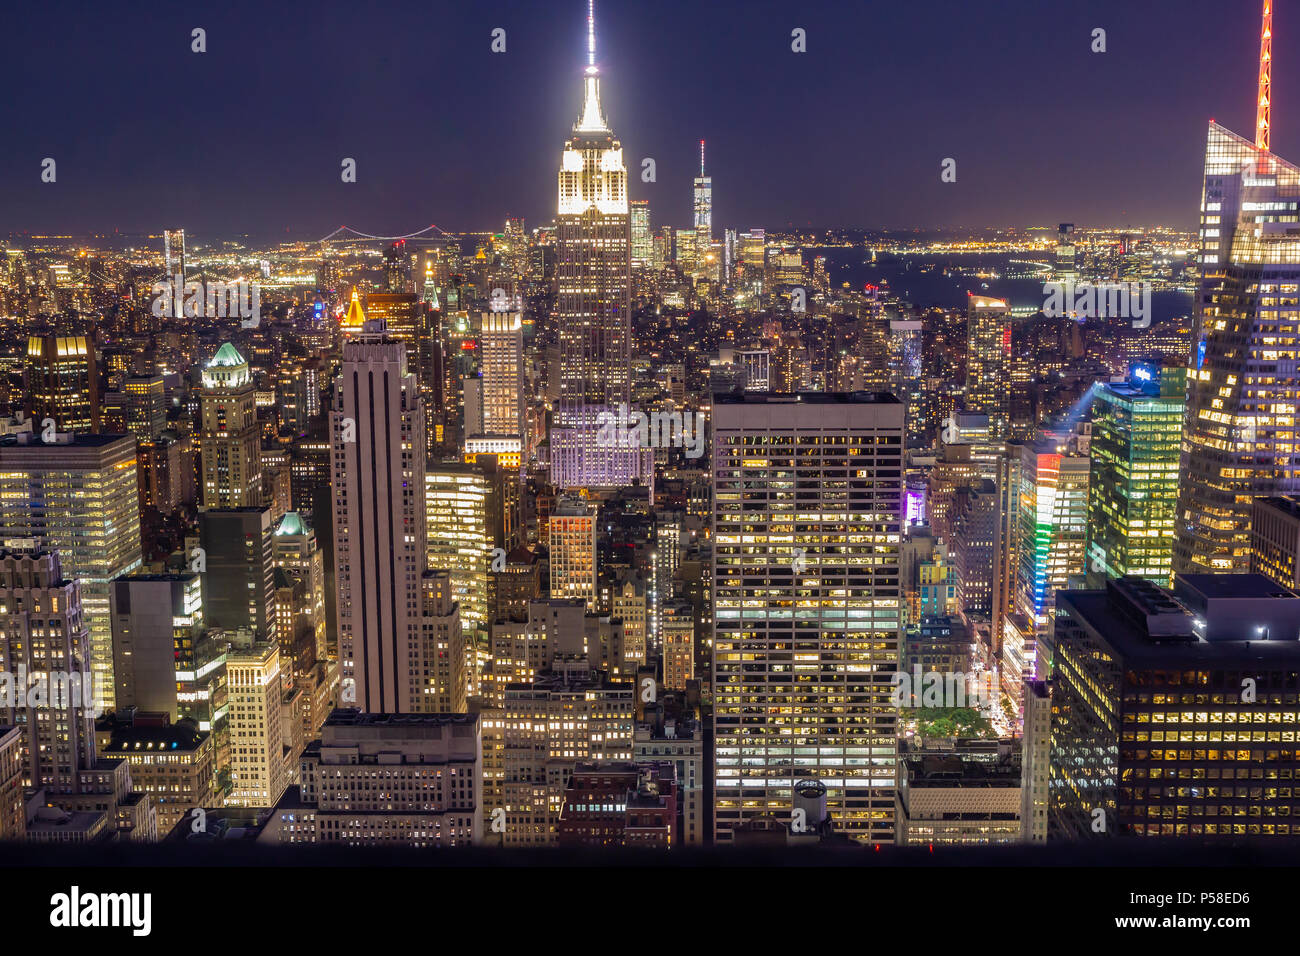 La Ciudad de Nueva York en la noche, visto desde la cima de la roca. El Empire State Building en el centro del bastidor, torre de la libertad en la distancia. Foto de stock